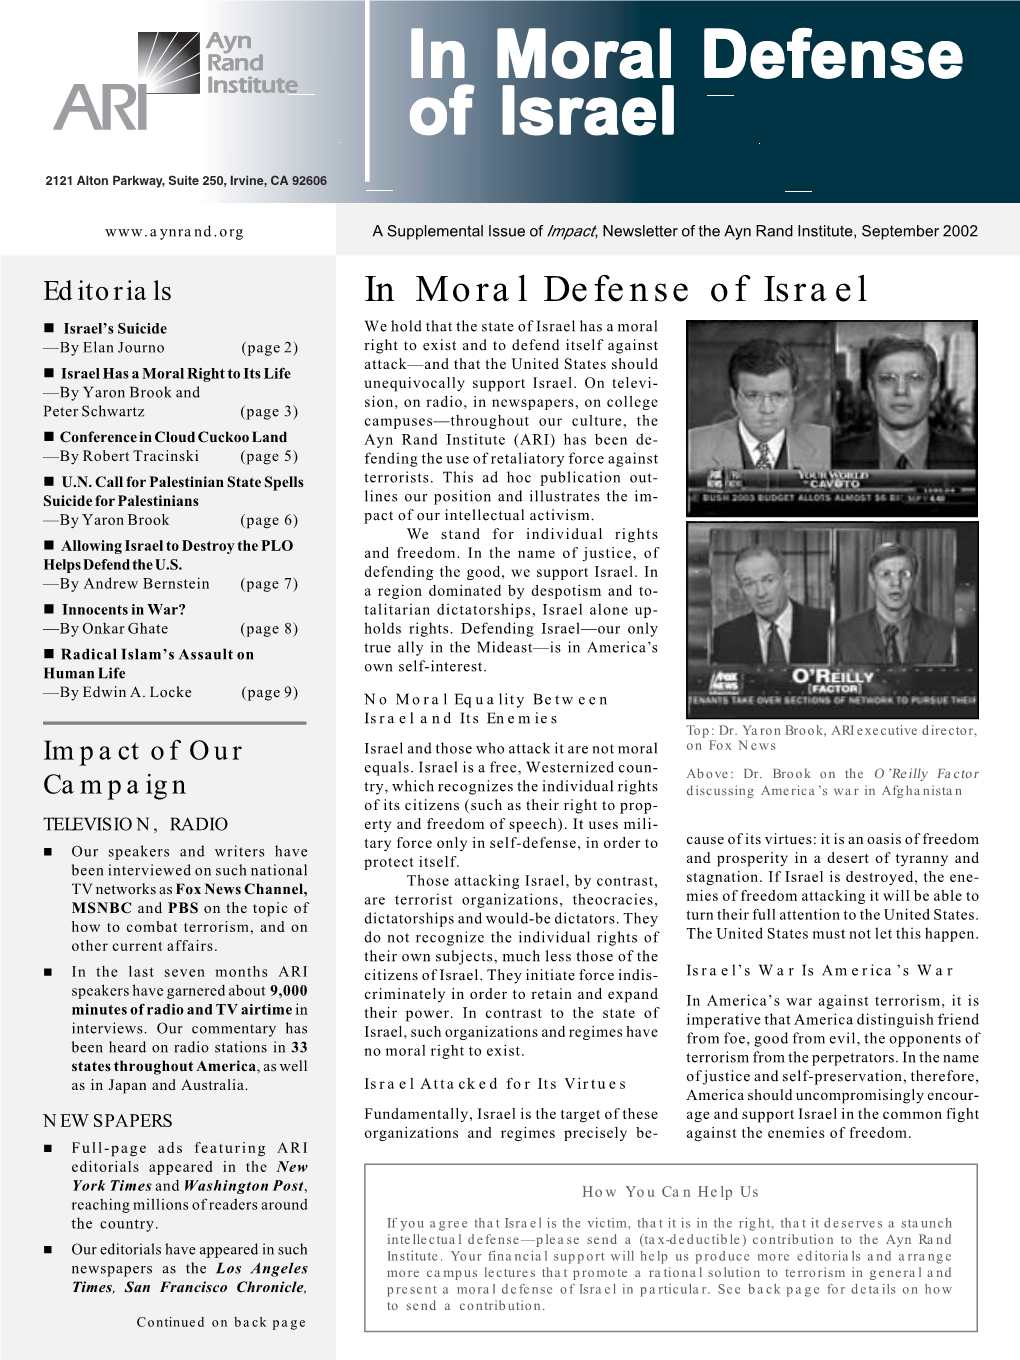 In Moral Defense of Israel